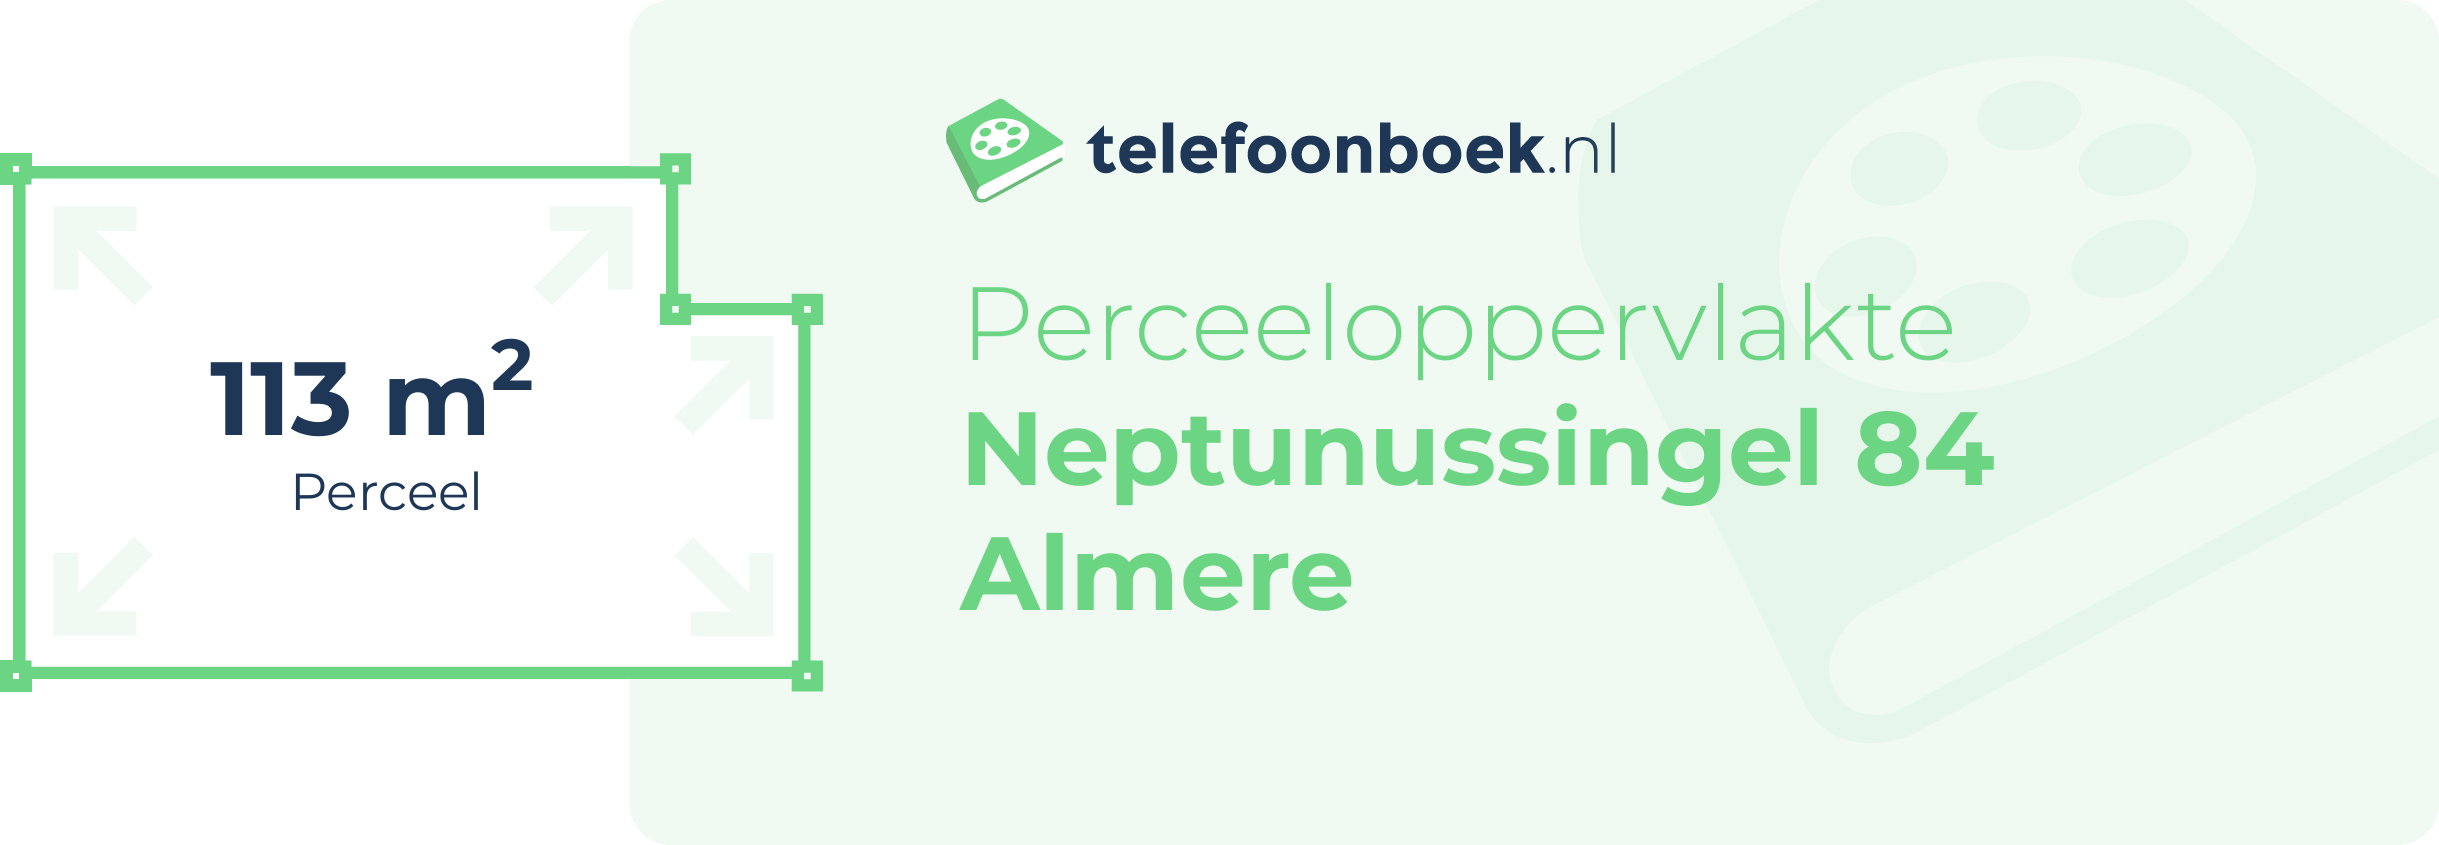 Perceeloppervlakte Neptunussingel 84 Almere